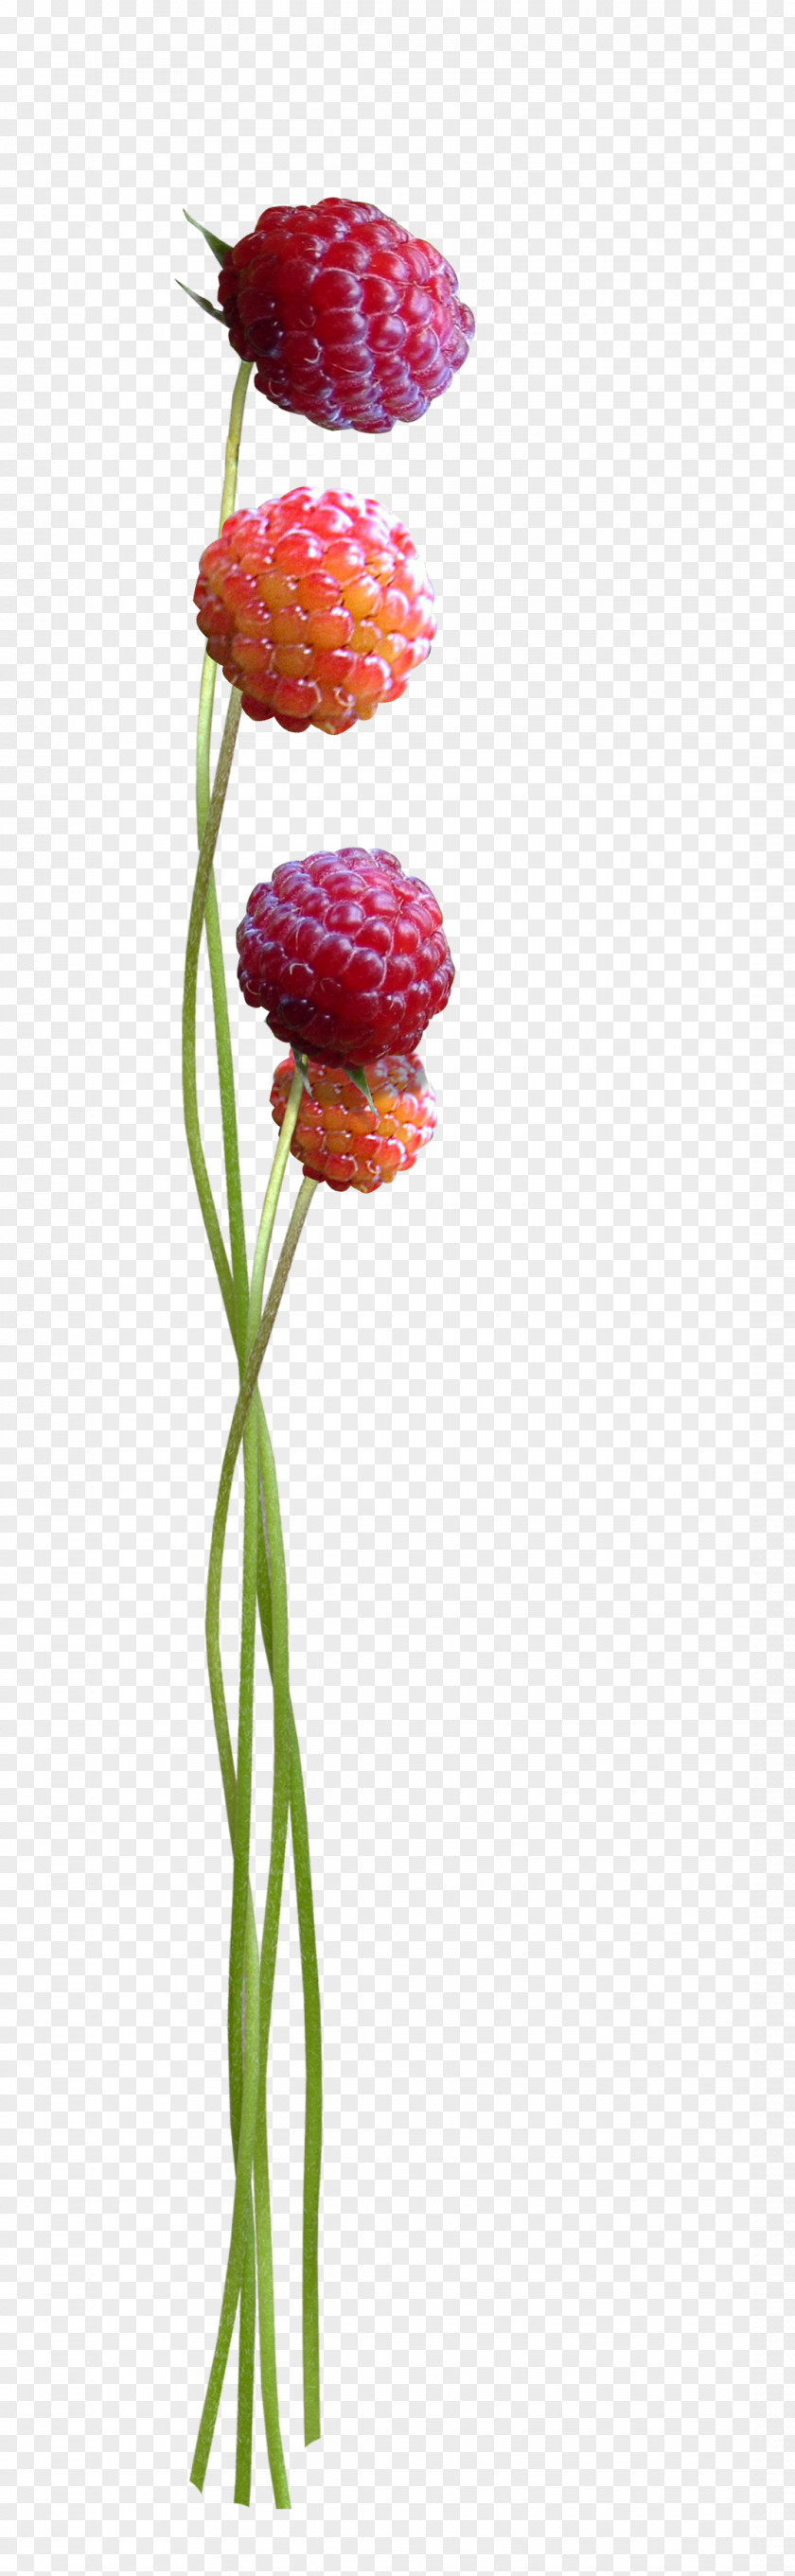 Raspberry Texture Floral Design Cut Flowers Tulip Plant Stem PNG